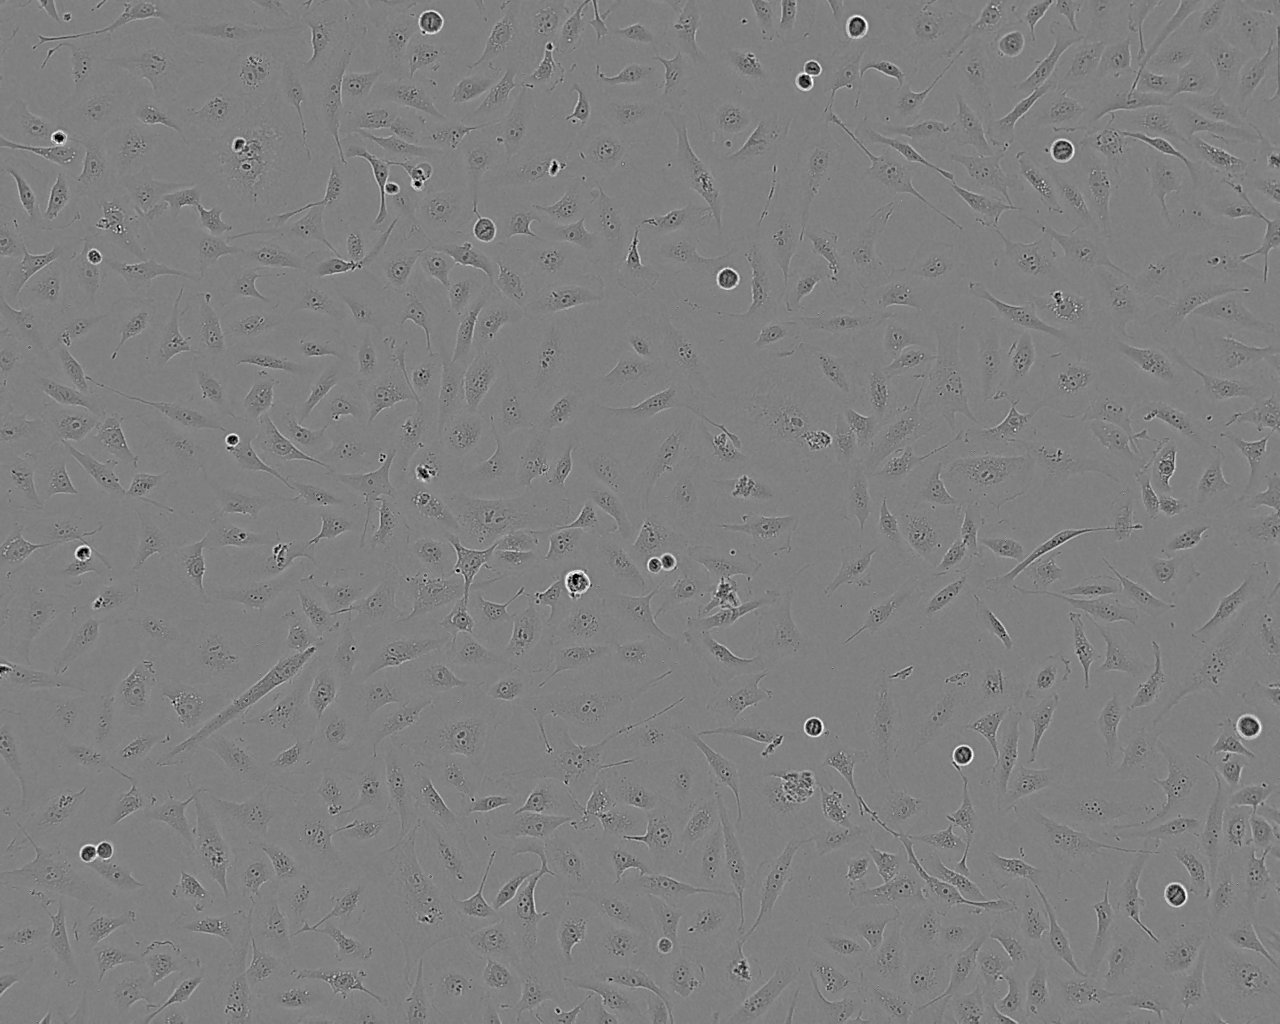 IPEC-J2 epithelioid cells猪小肠上皮细胞系,IPEC-J2 epithelioid cells